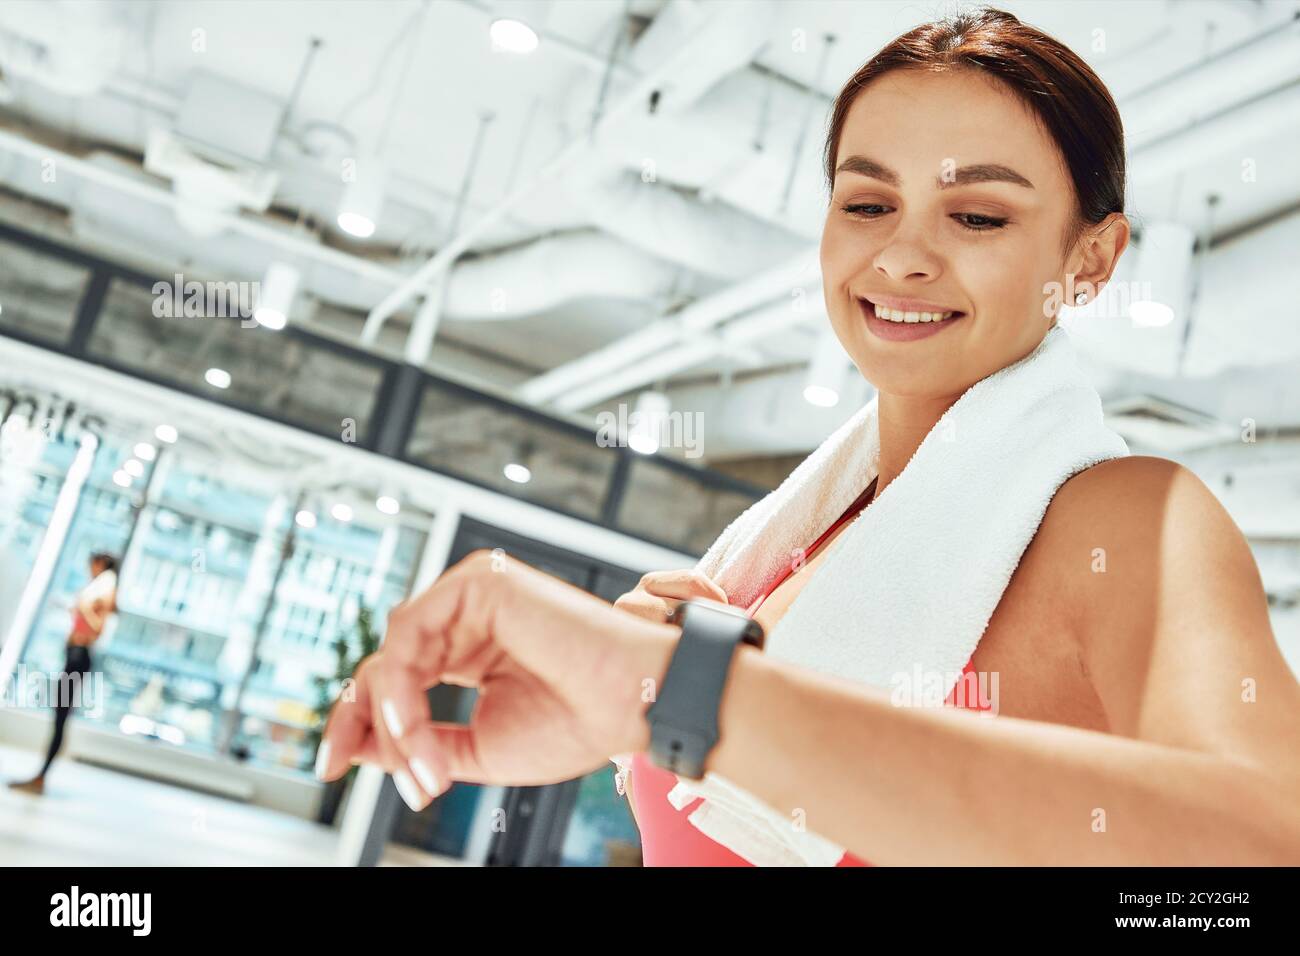 Junge glückliche sportliche Frau mit weißem Handtuch auf den Schultern Blick auf Smartwatch beim Training im Fitnessstudio. Sport, Workout, Wellness und gesundes Lifestyle-Konzept Stockfoto